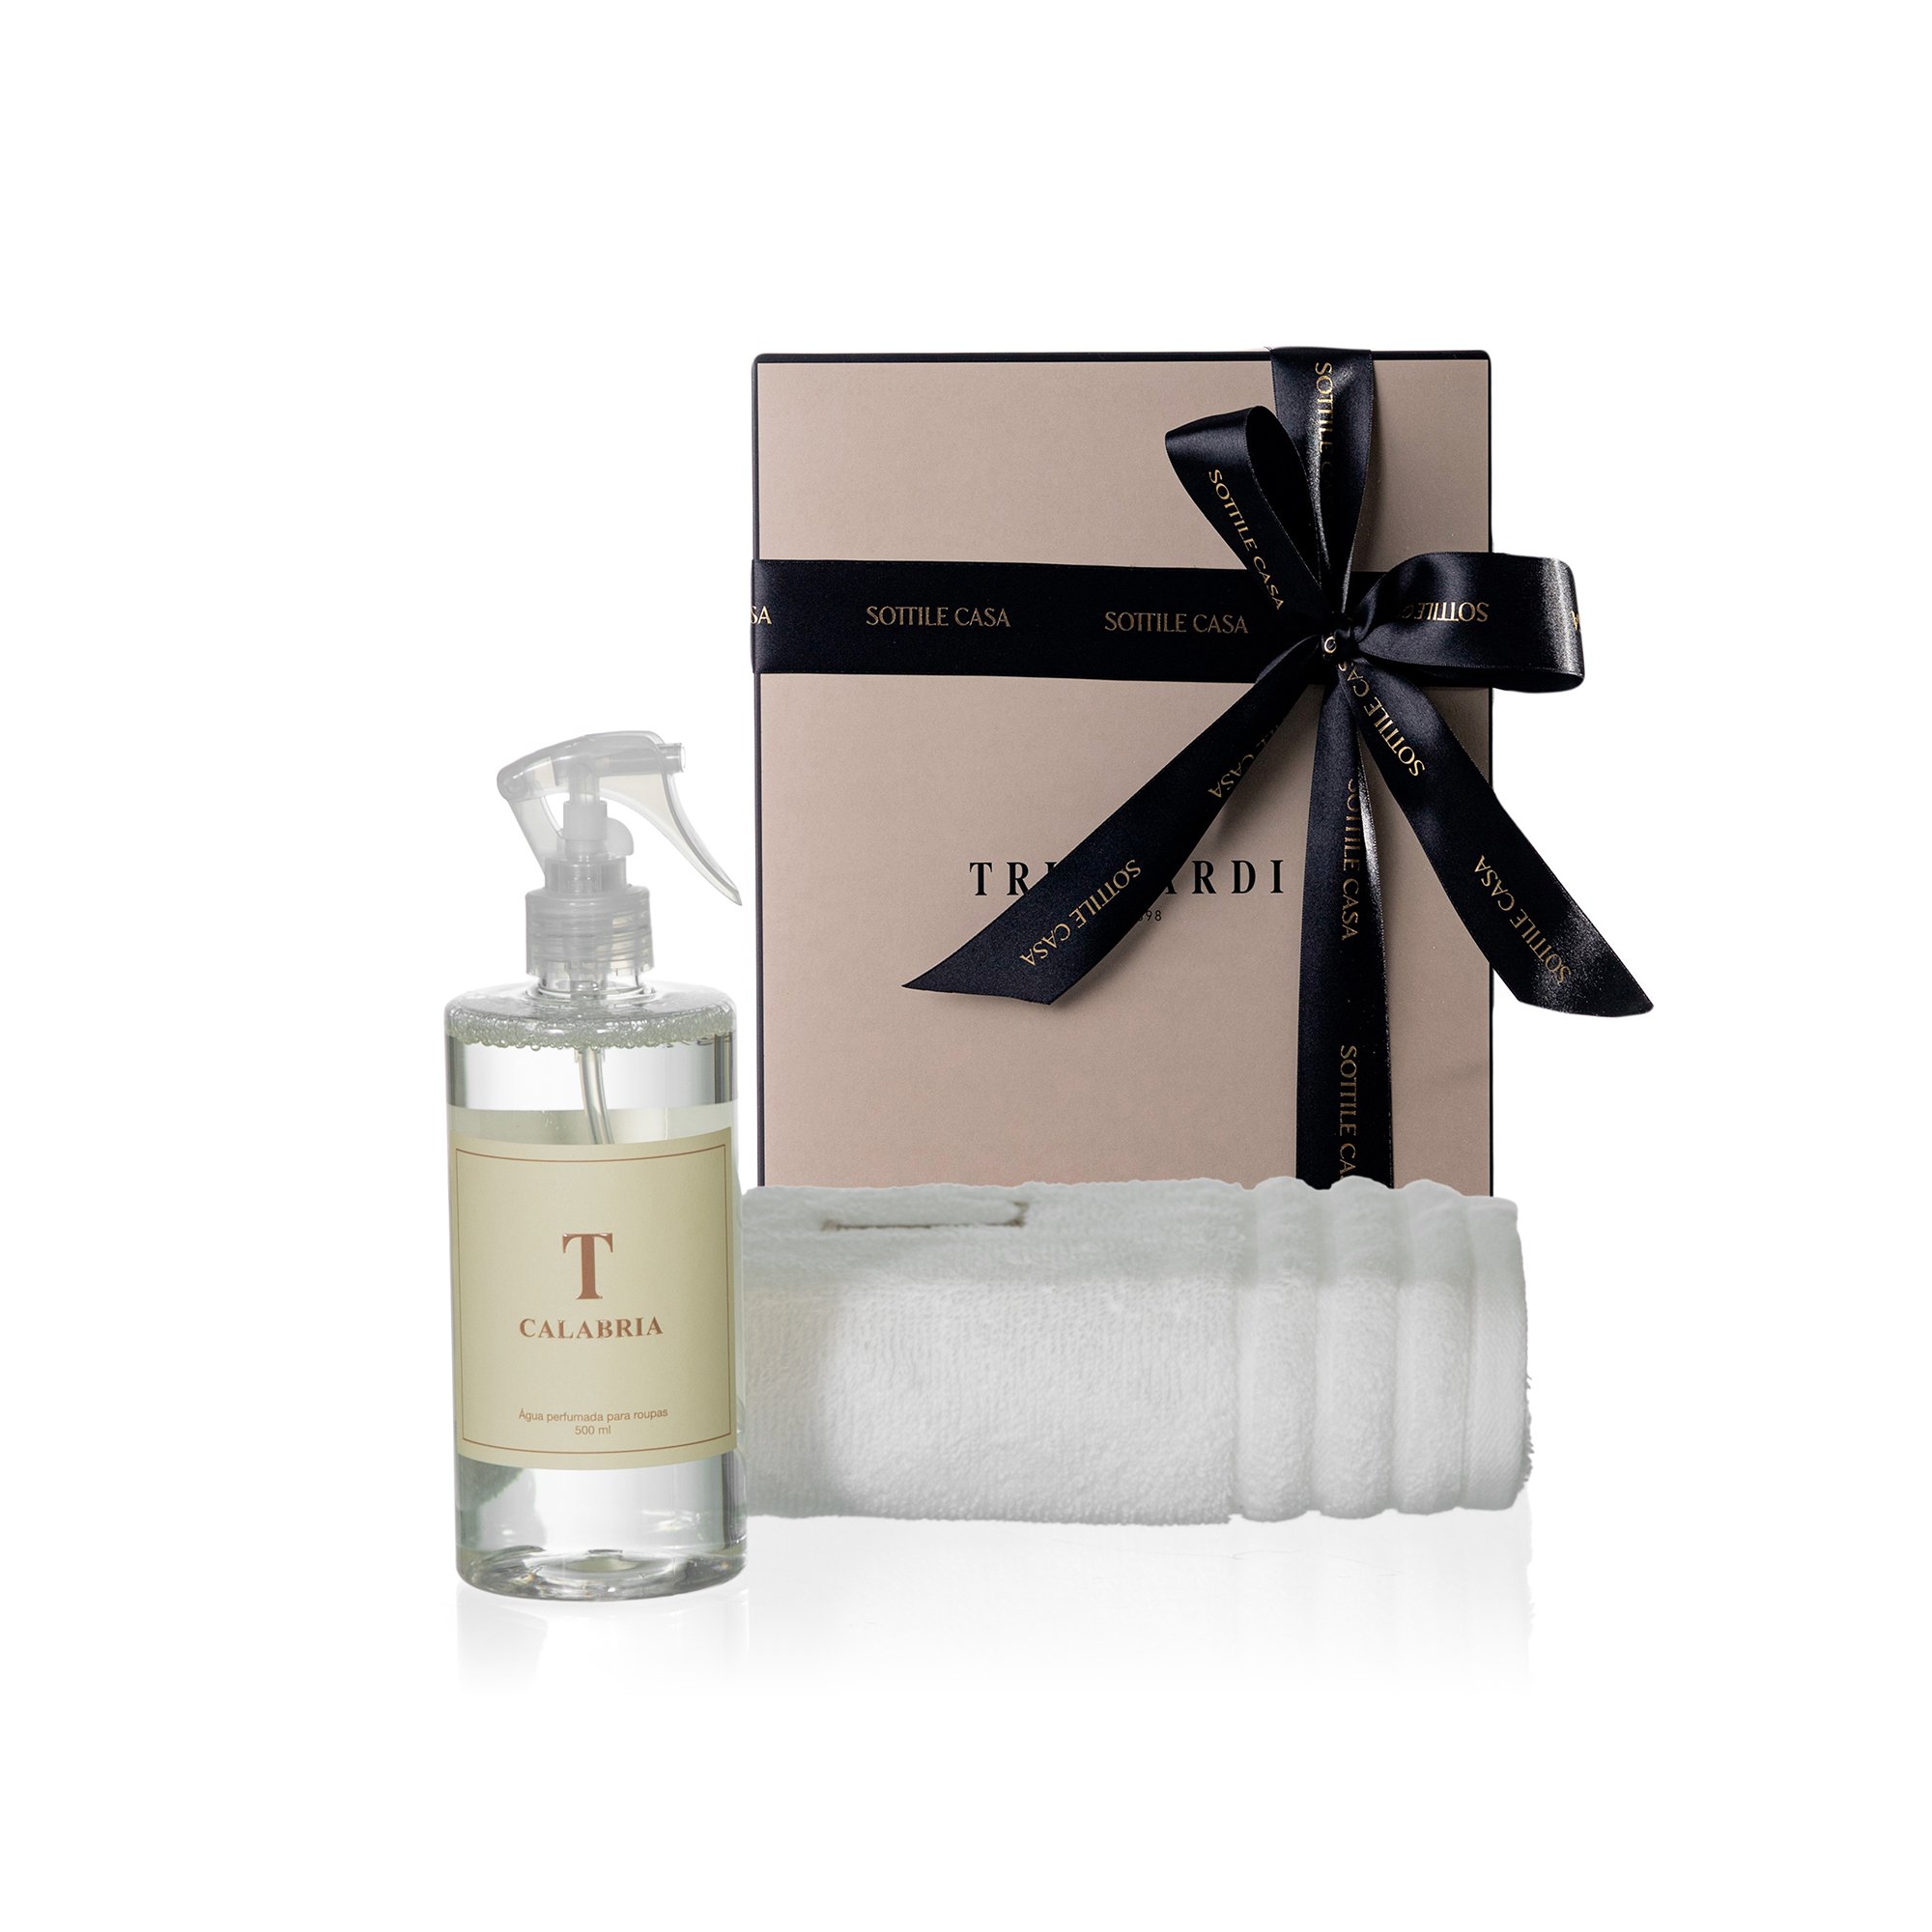 kit toalha de rosto 100 algodao trussardi imperiale branco com agua perfumada trussardi 500ml calabria com caixa de presente 2